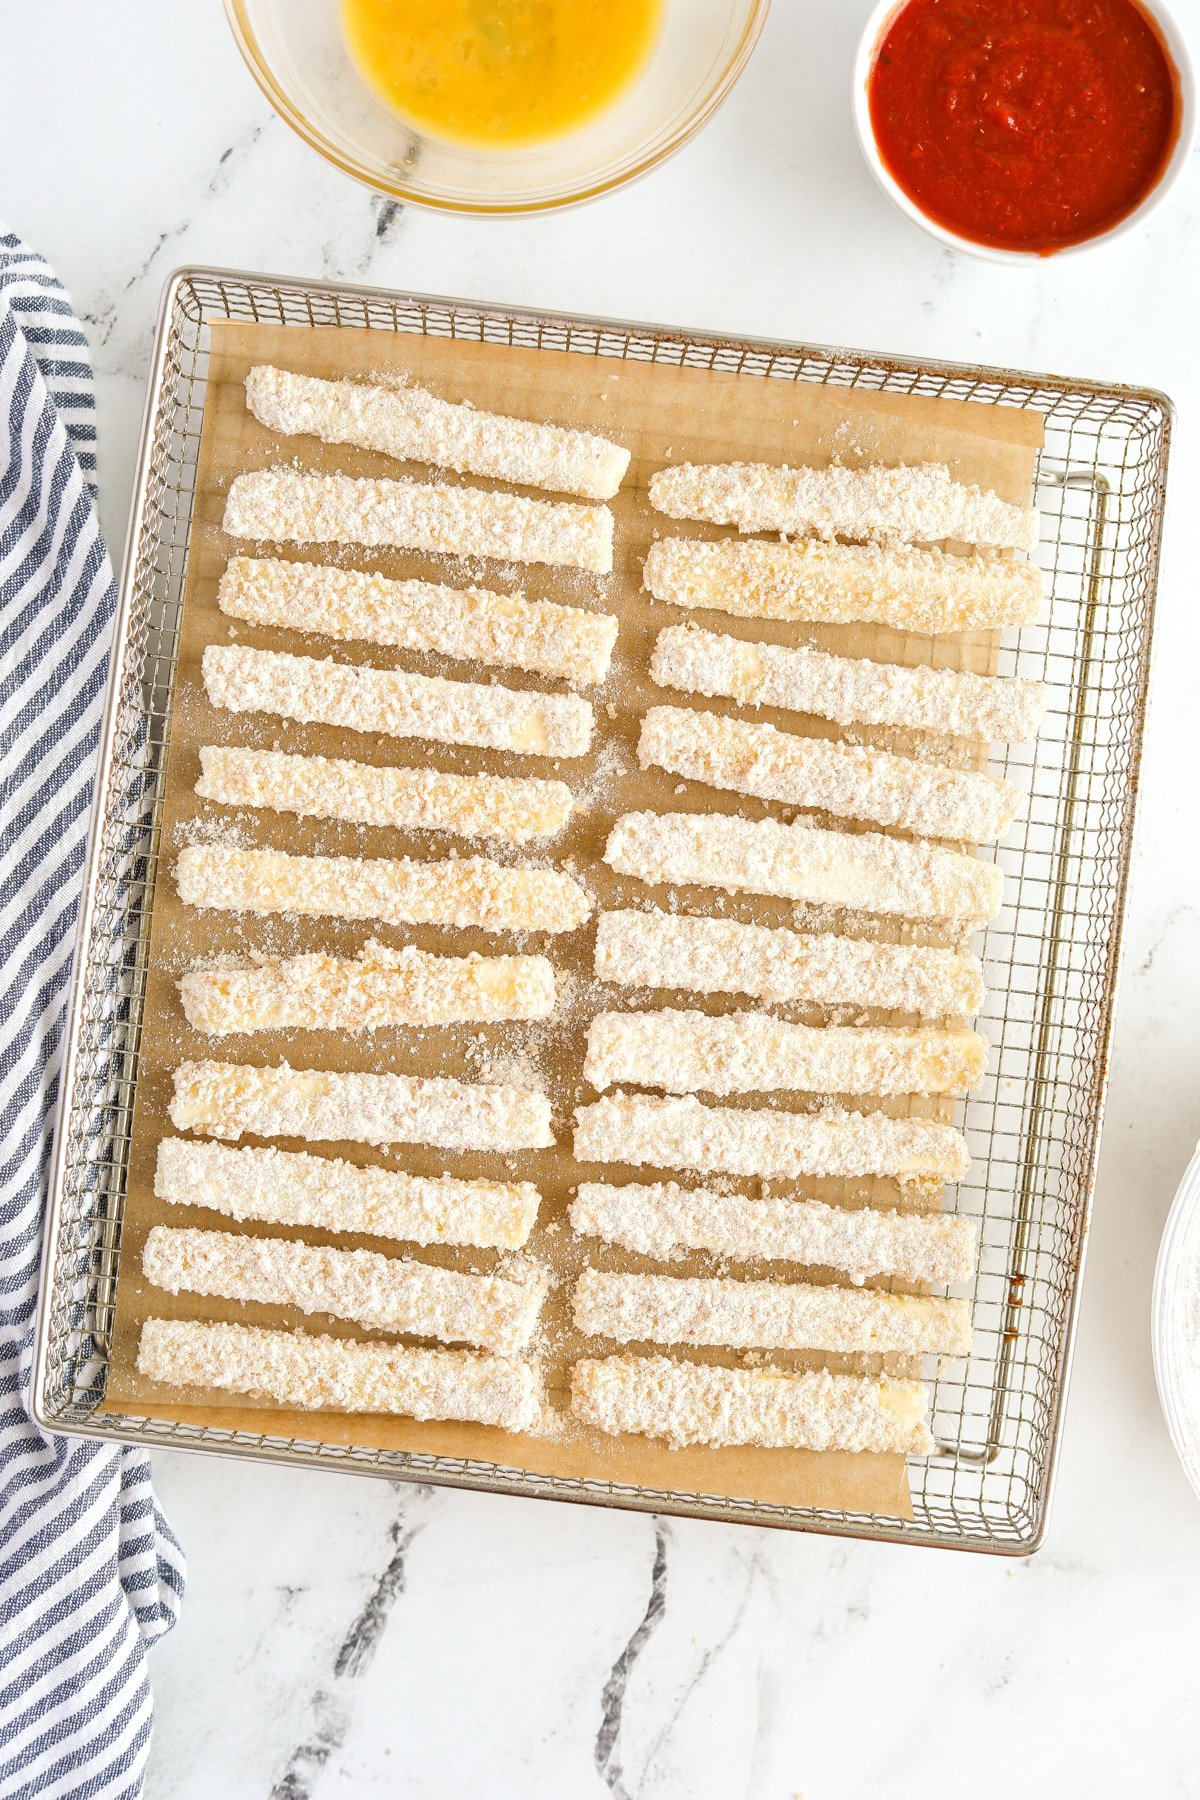 Breaded halloumi sticks on an air fryer tray.